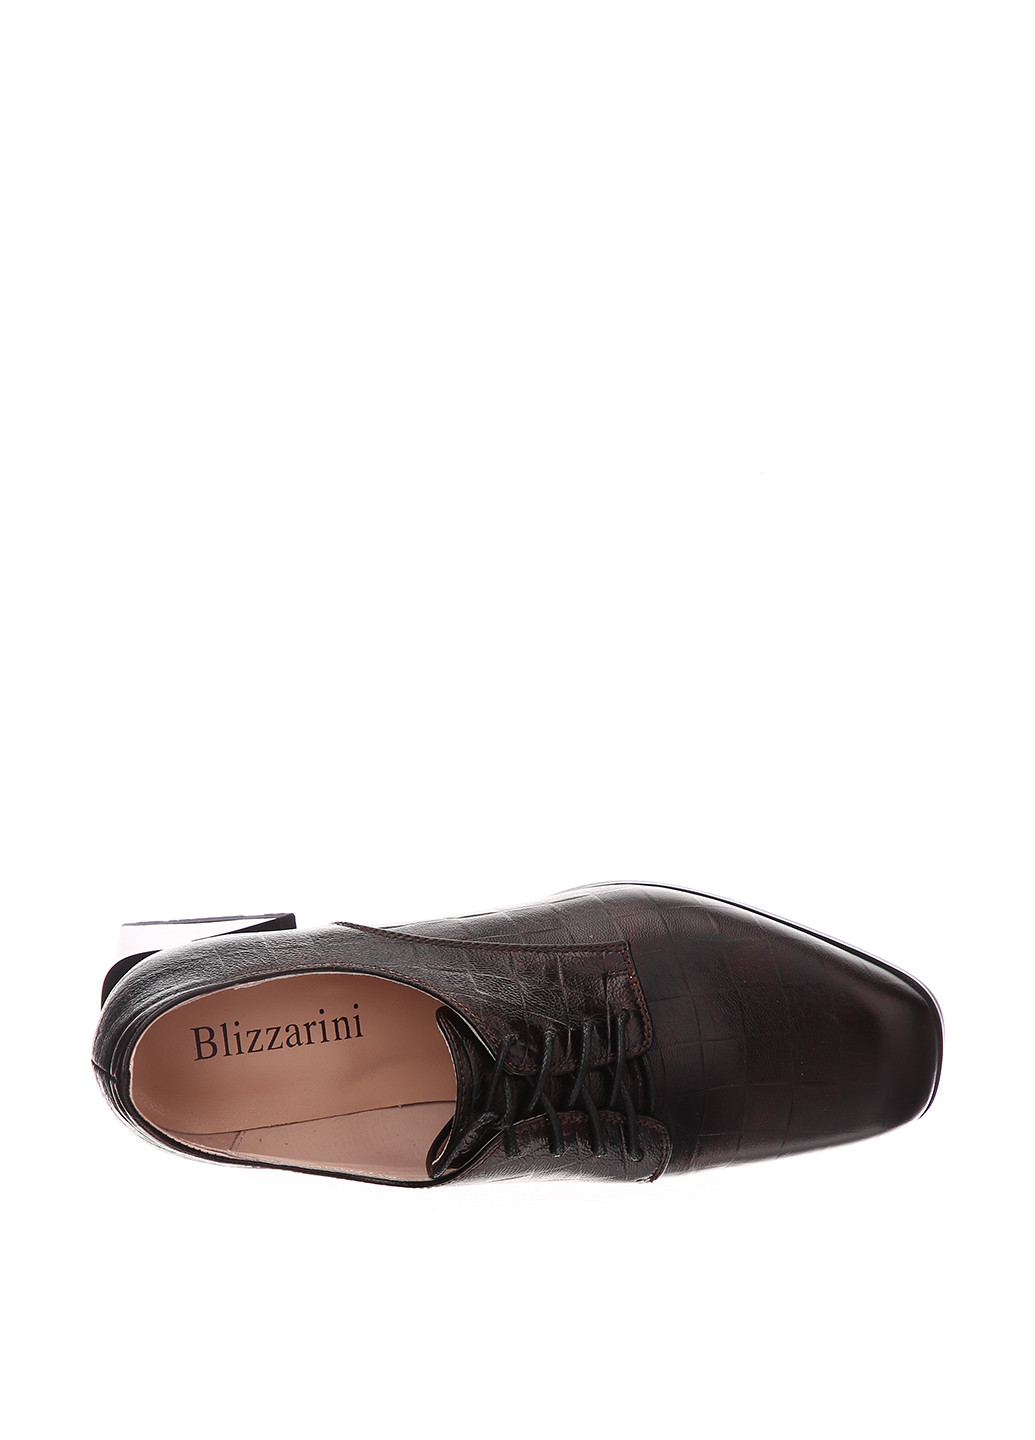 Туфли Blizzarini на среднем каблуке с тиснением